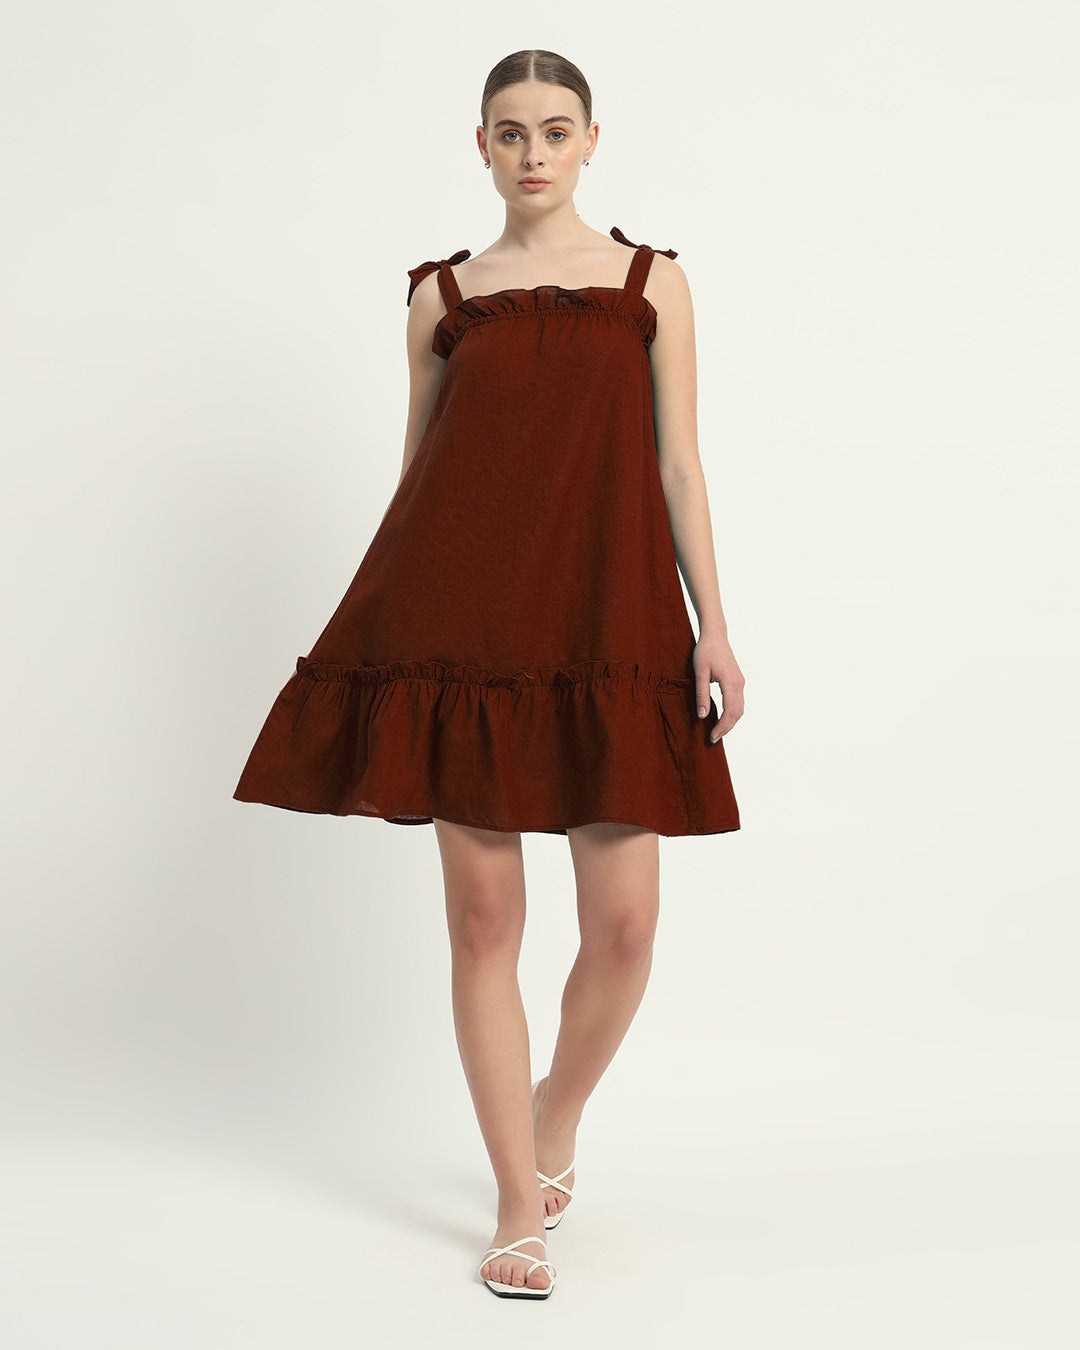 The Rouge Amalfi Cotton Dress